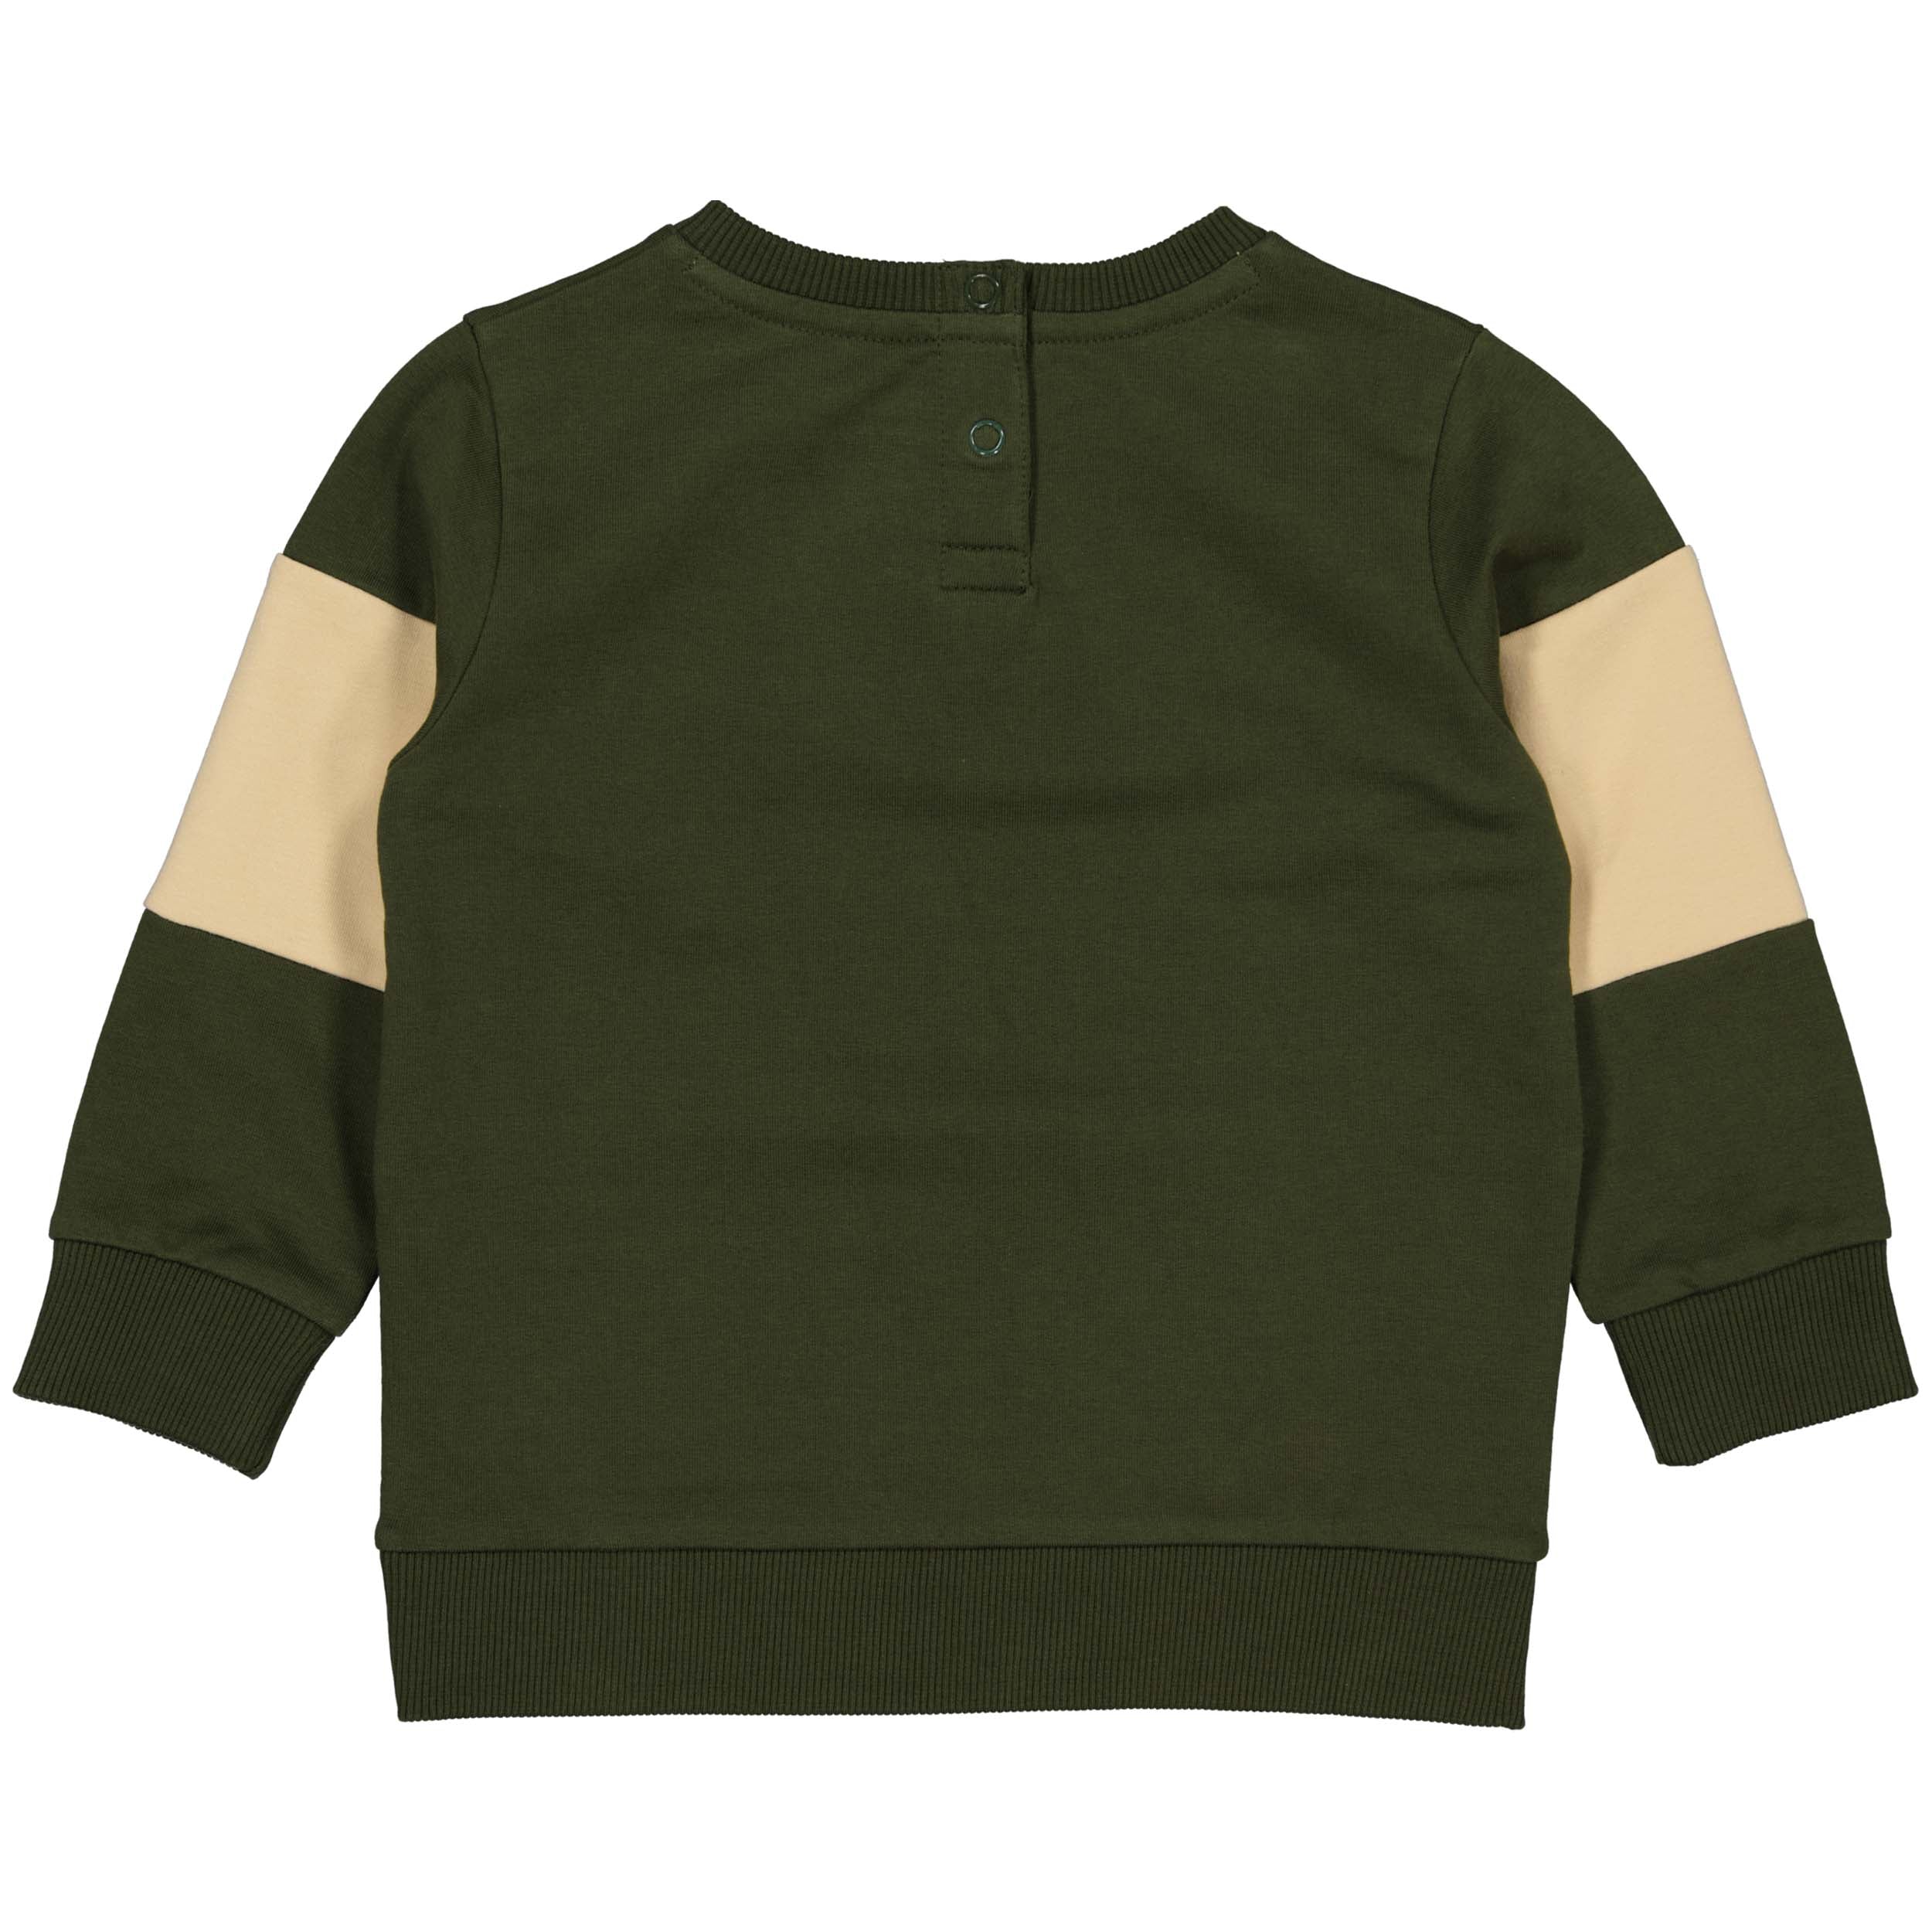 Jongens Sweater SEPPW221 van Quapi in de kleur Green Wood in maat 86.